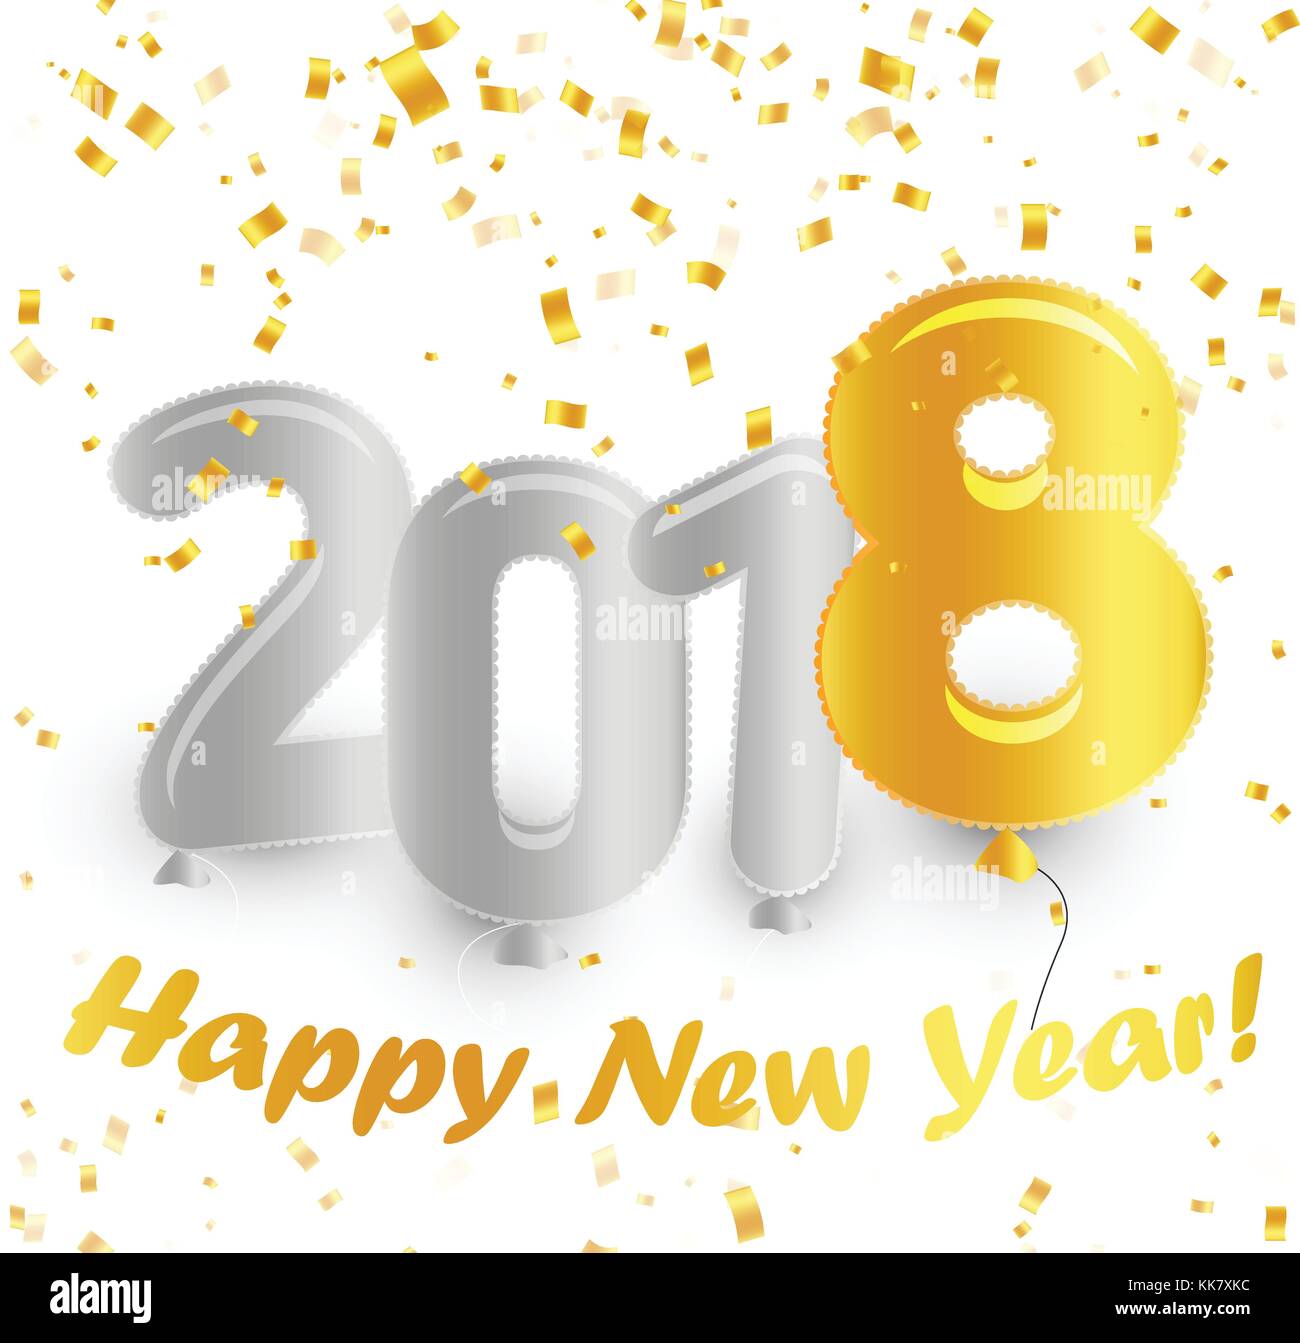 Golden gradient Symbol Luftballons Plakat. weißen Hintergrund mit Gold fallen Konfetti. Vector Illustration. Eve happy new year Karte. Stock Vektor